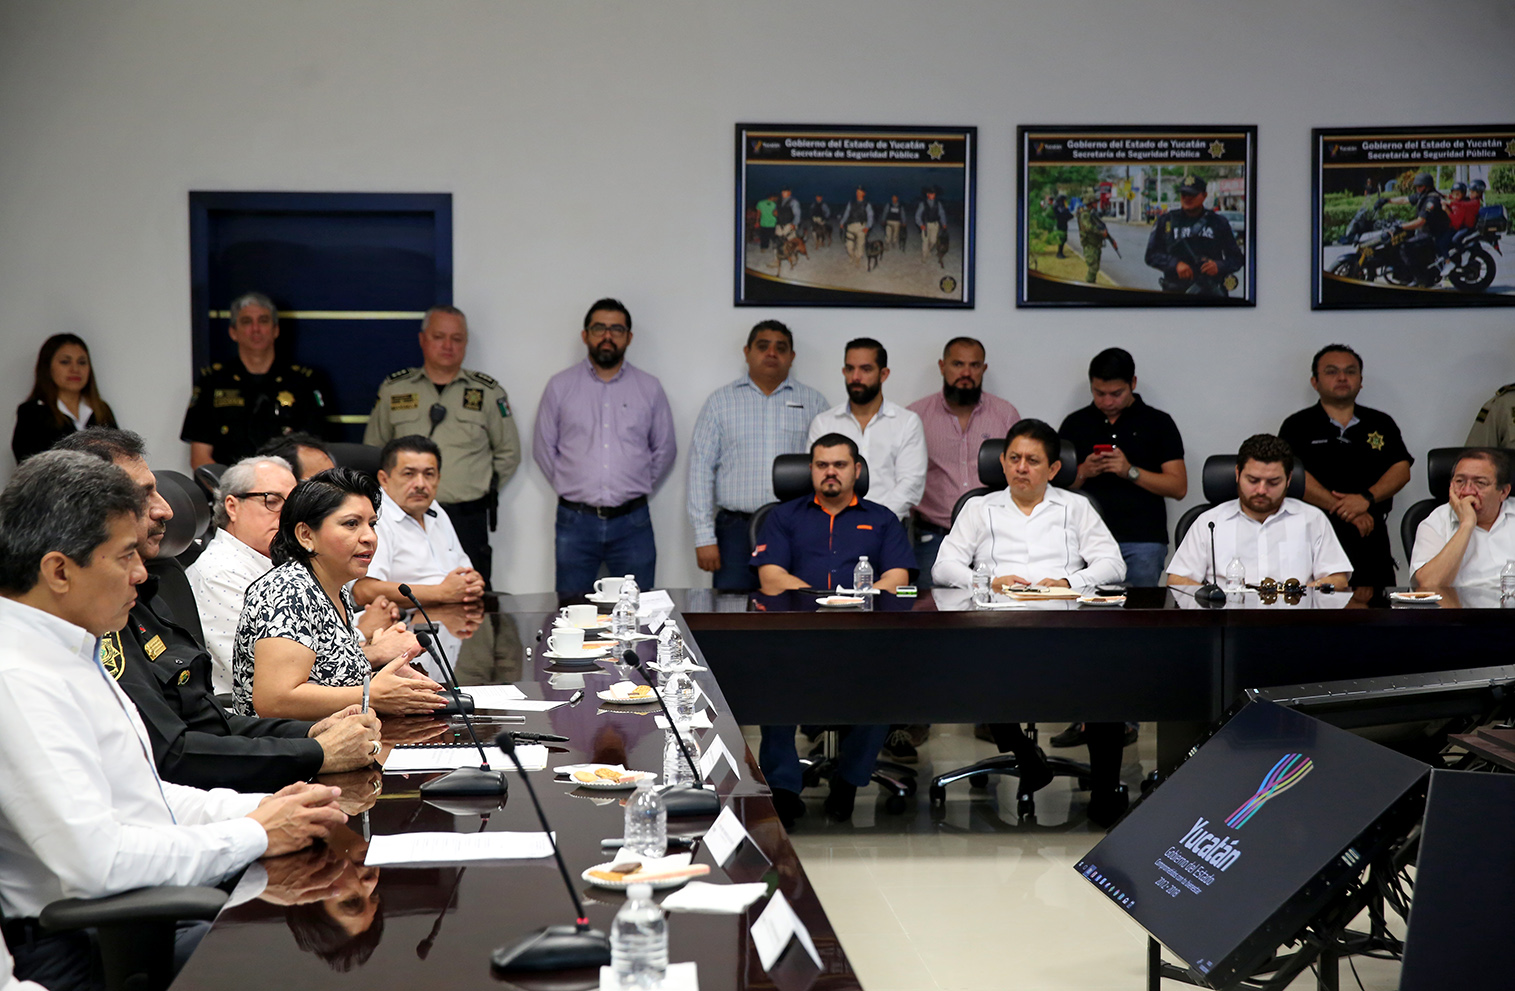 Grupo de empresas yucatecas adopta estrategia estatal de seguridad